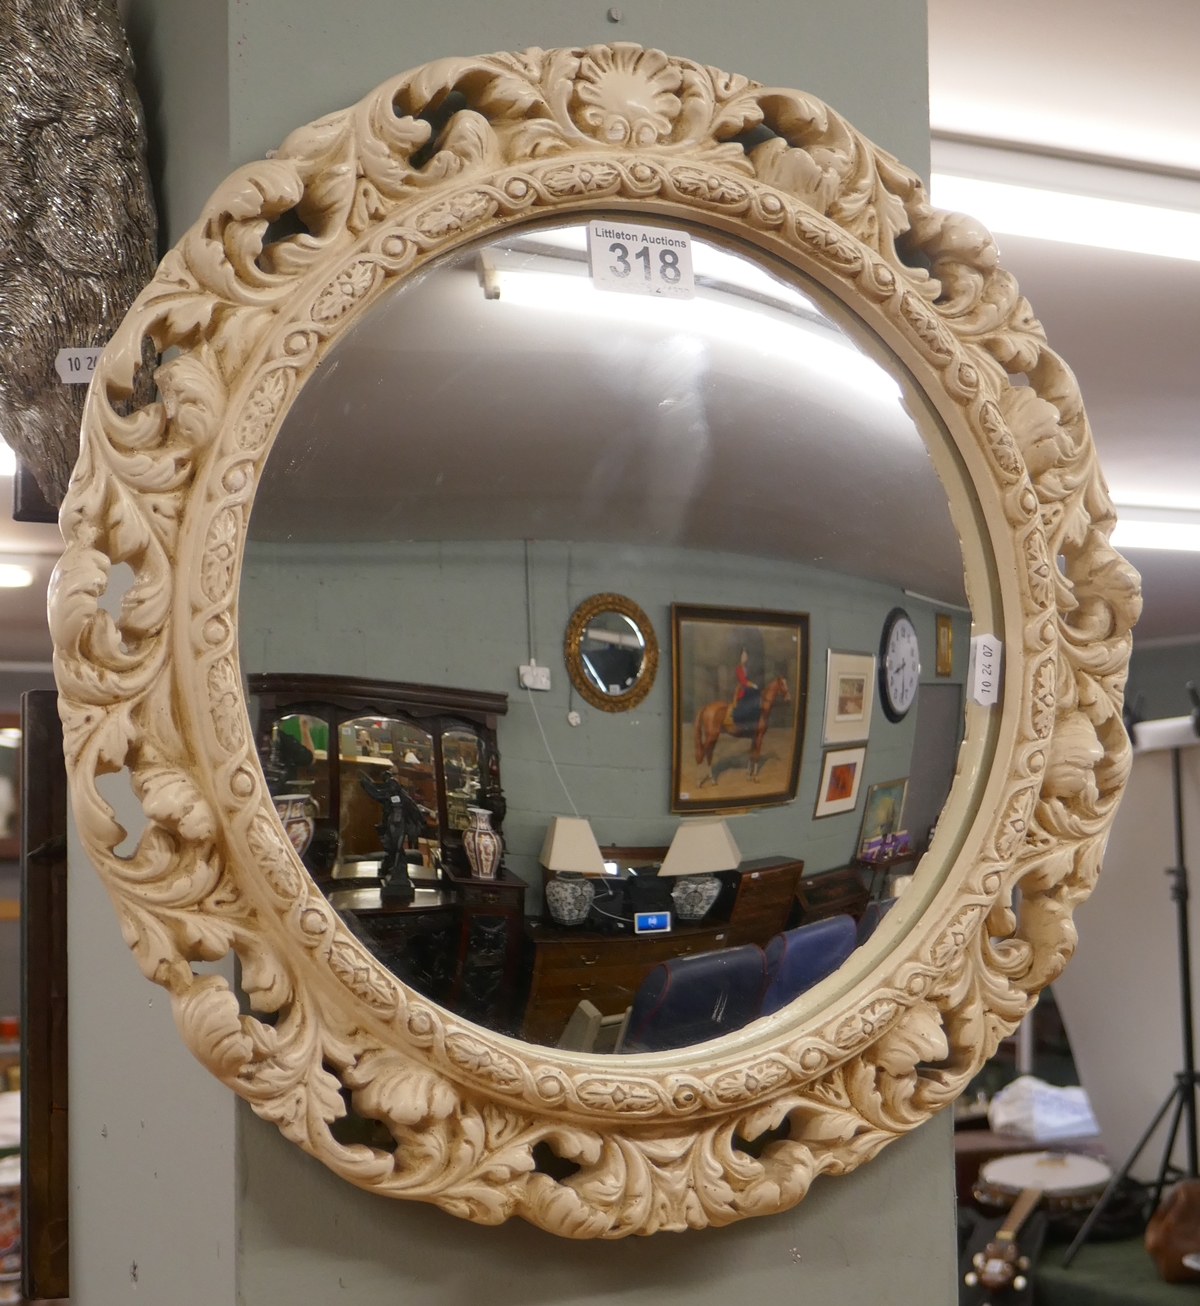 Convex mirror in ornate frame